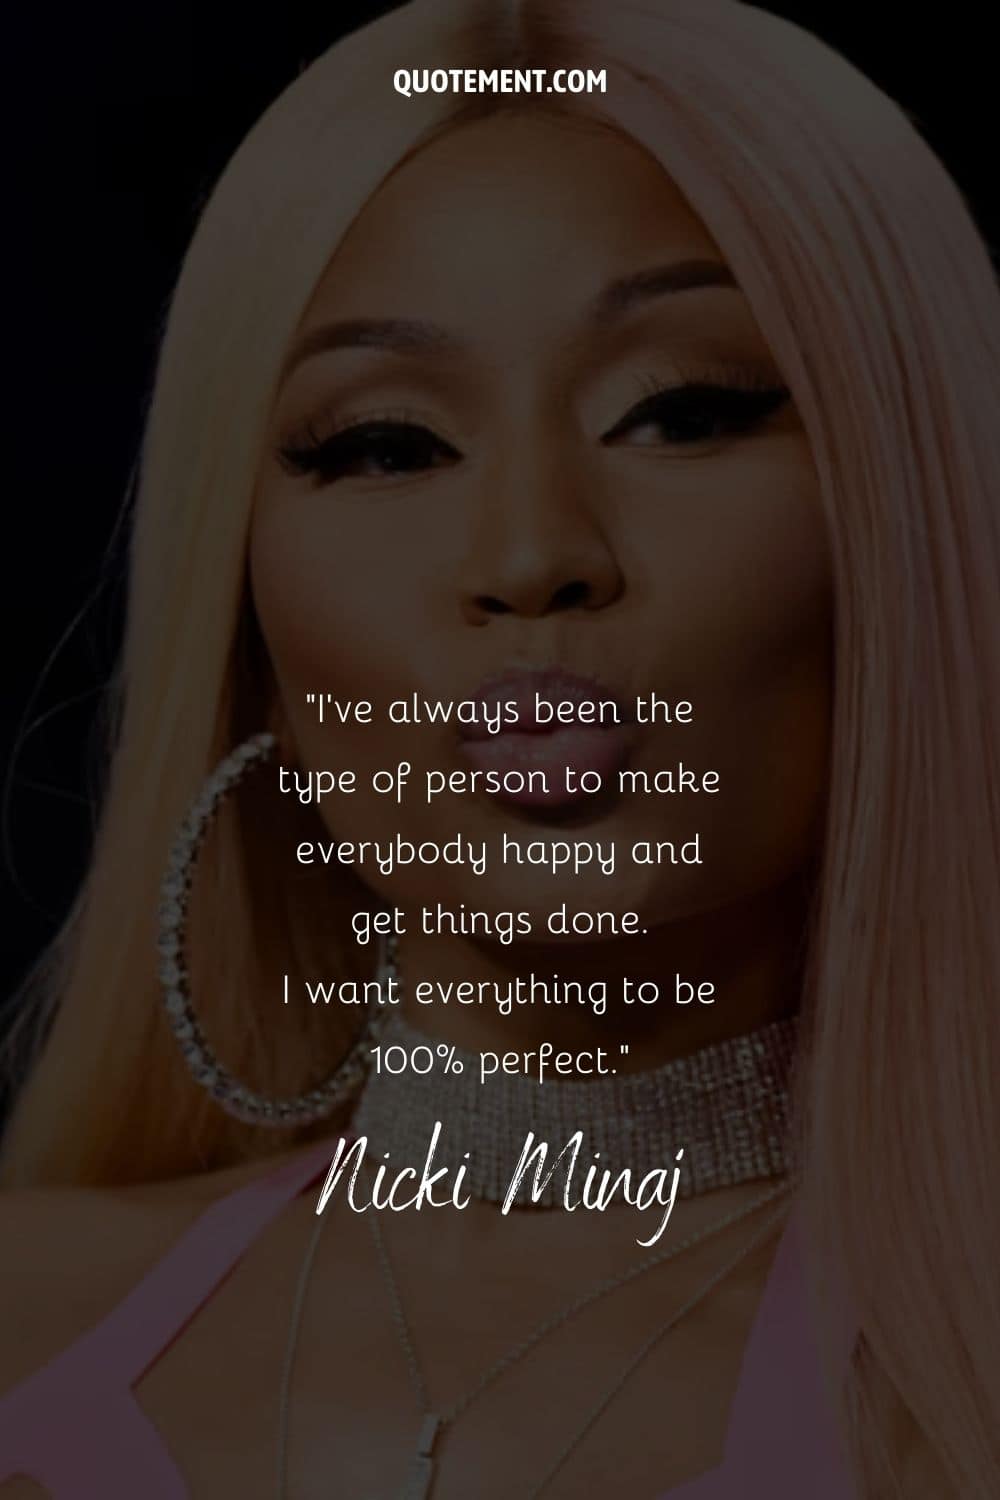 Cita de Nicki Minaj y su retrato de fondo